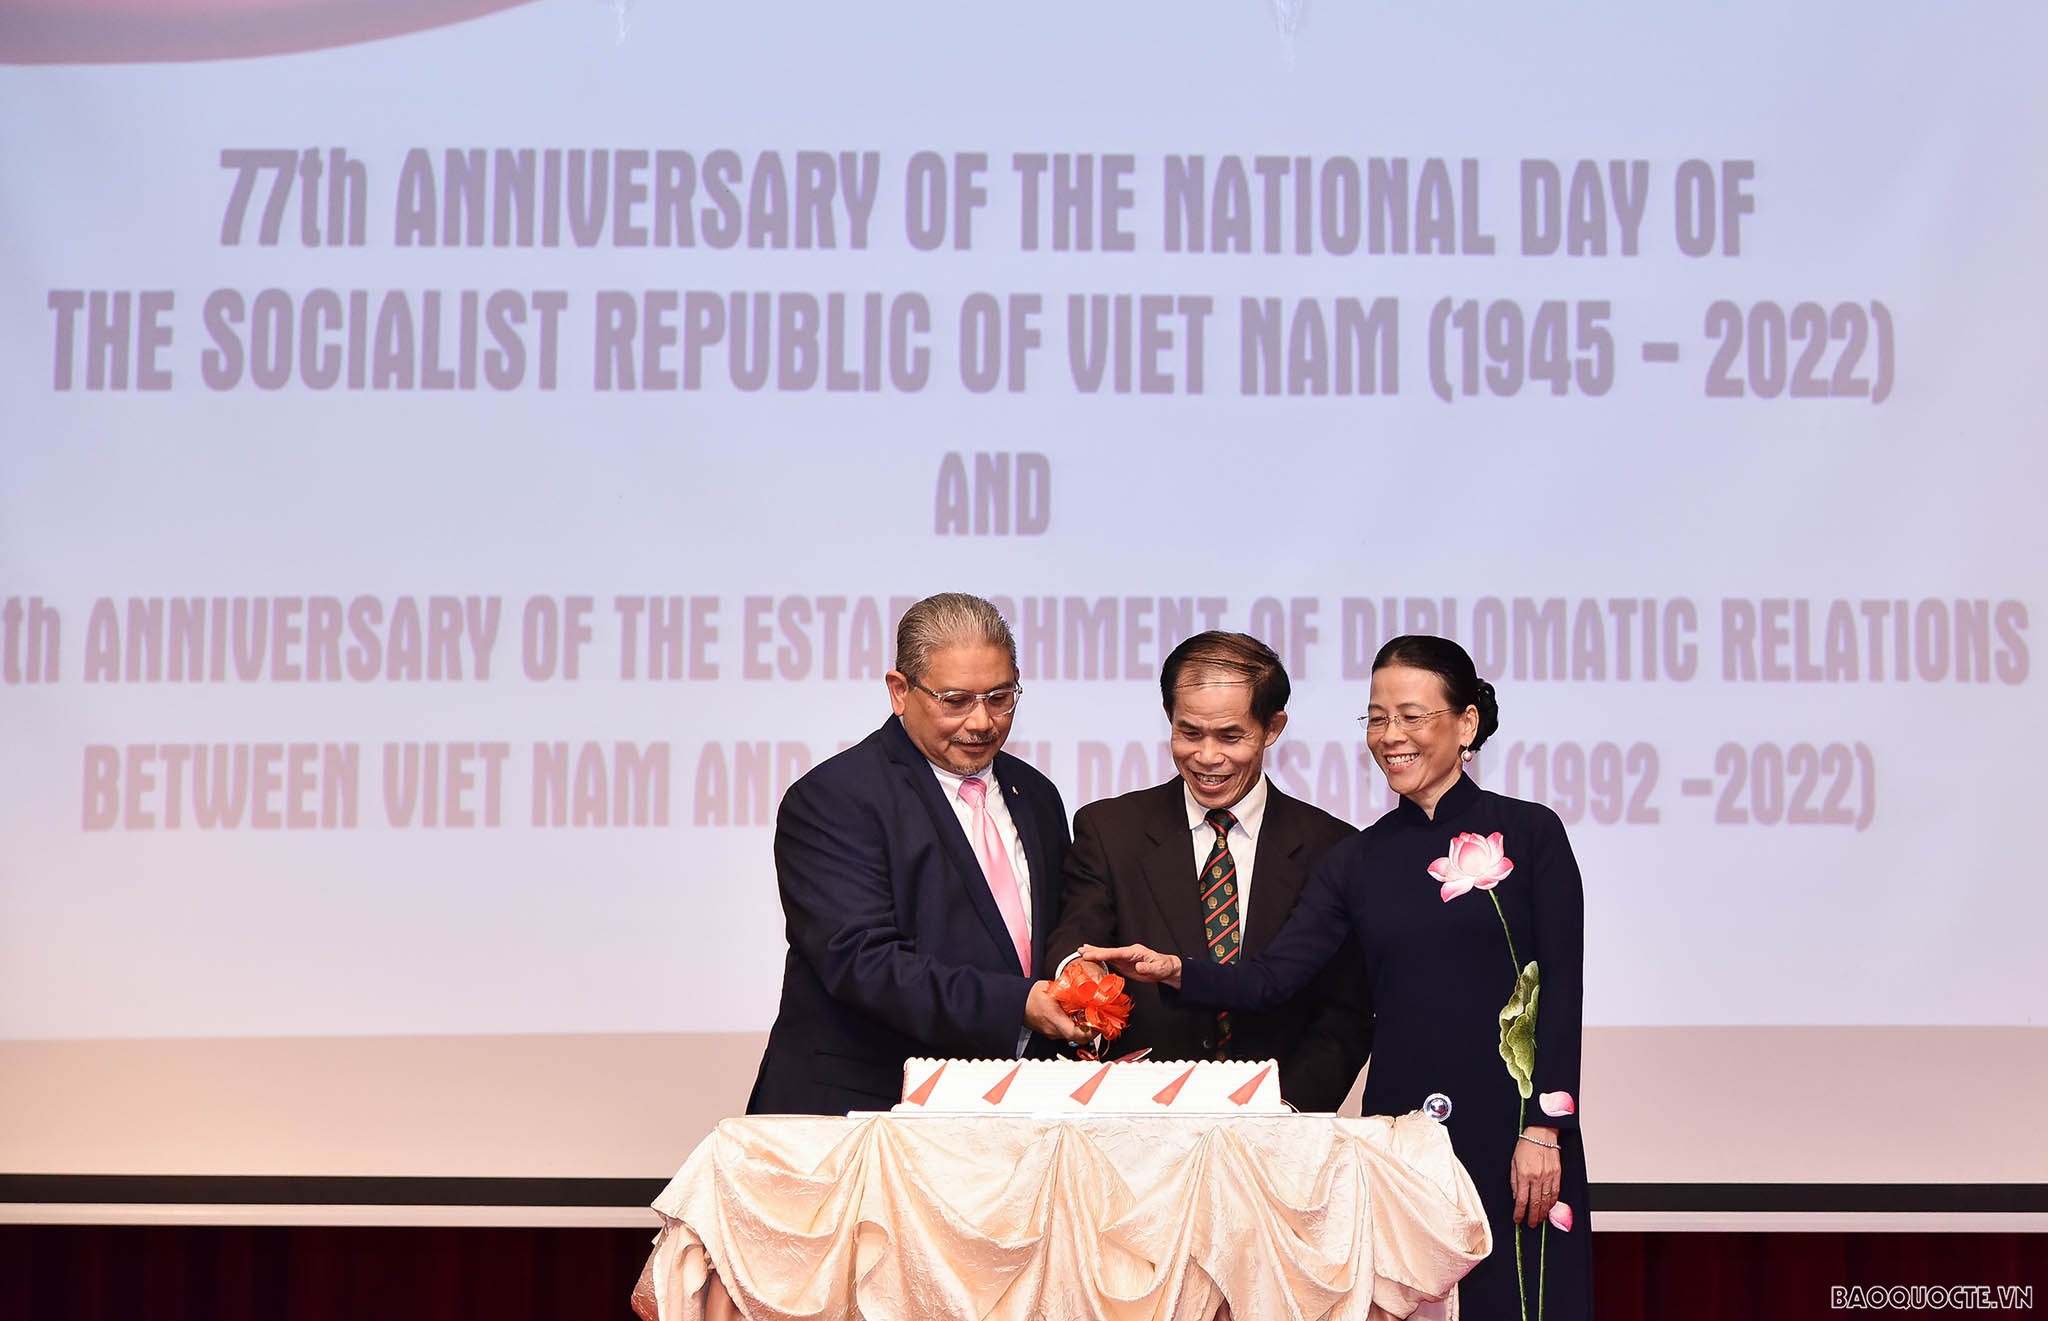 Bộ trưởng Ngoại giao Bùi Thanh Sơn dự Lễ kỷ niệm 77 năm Quốc khánh 2/9 tại Brunei